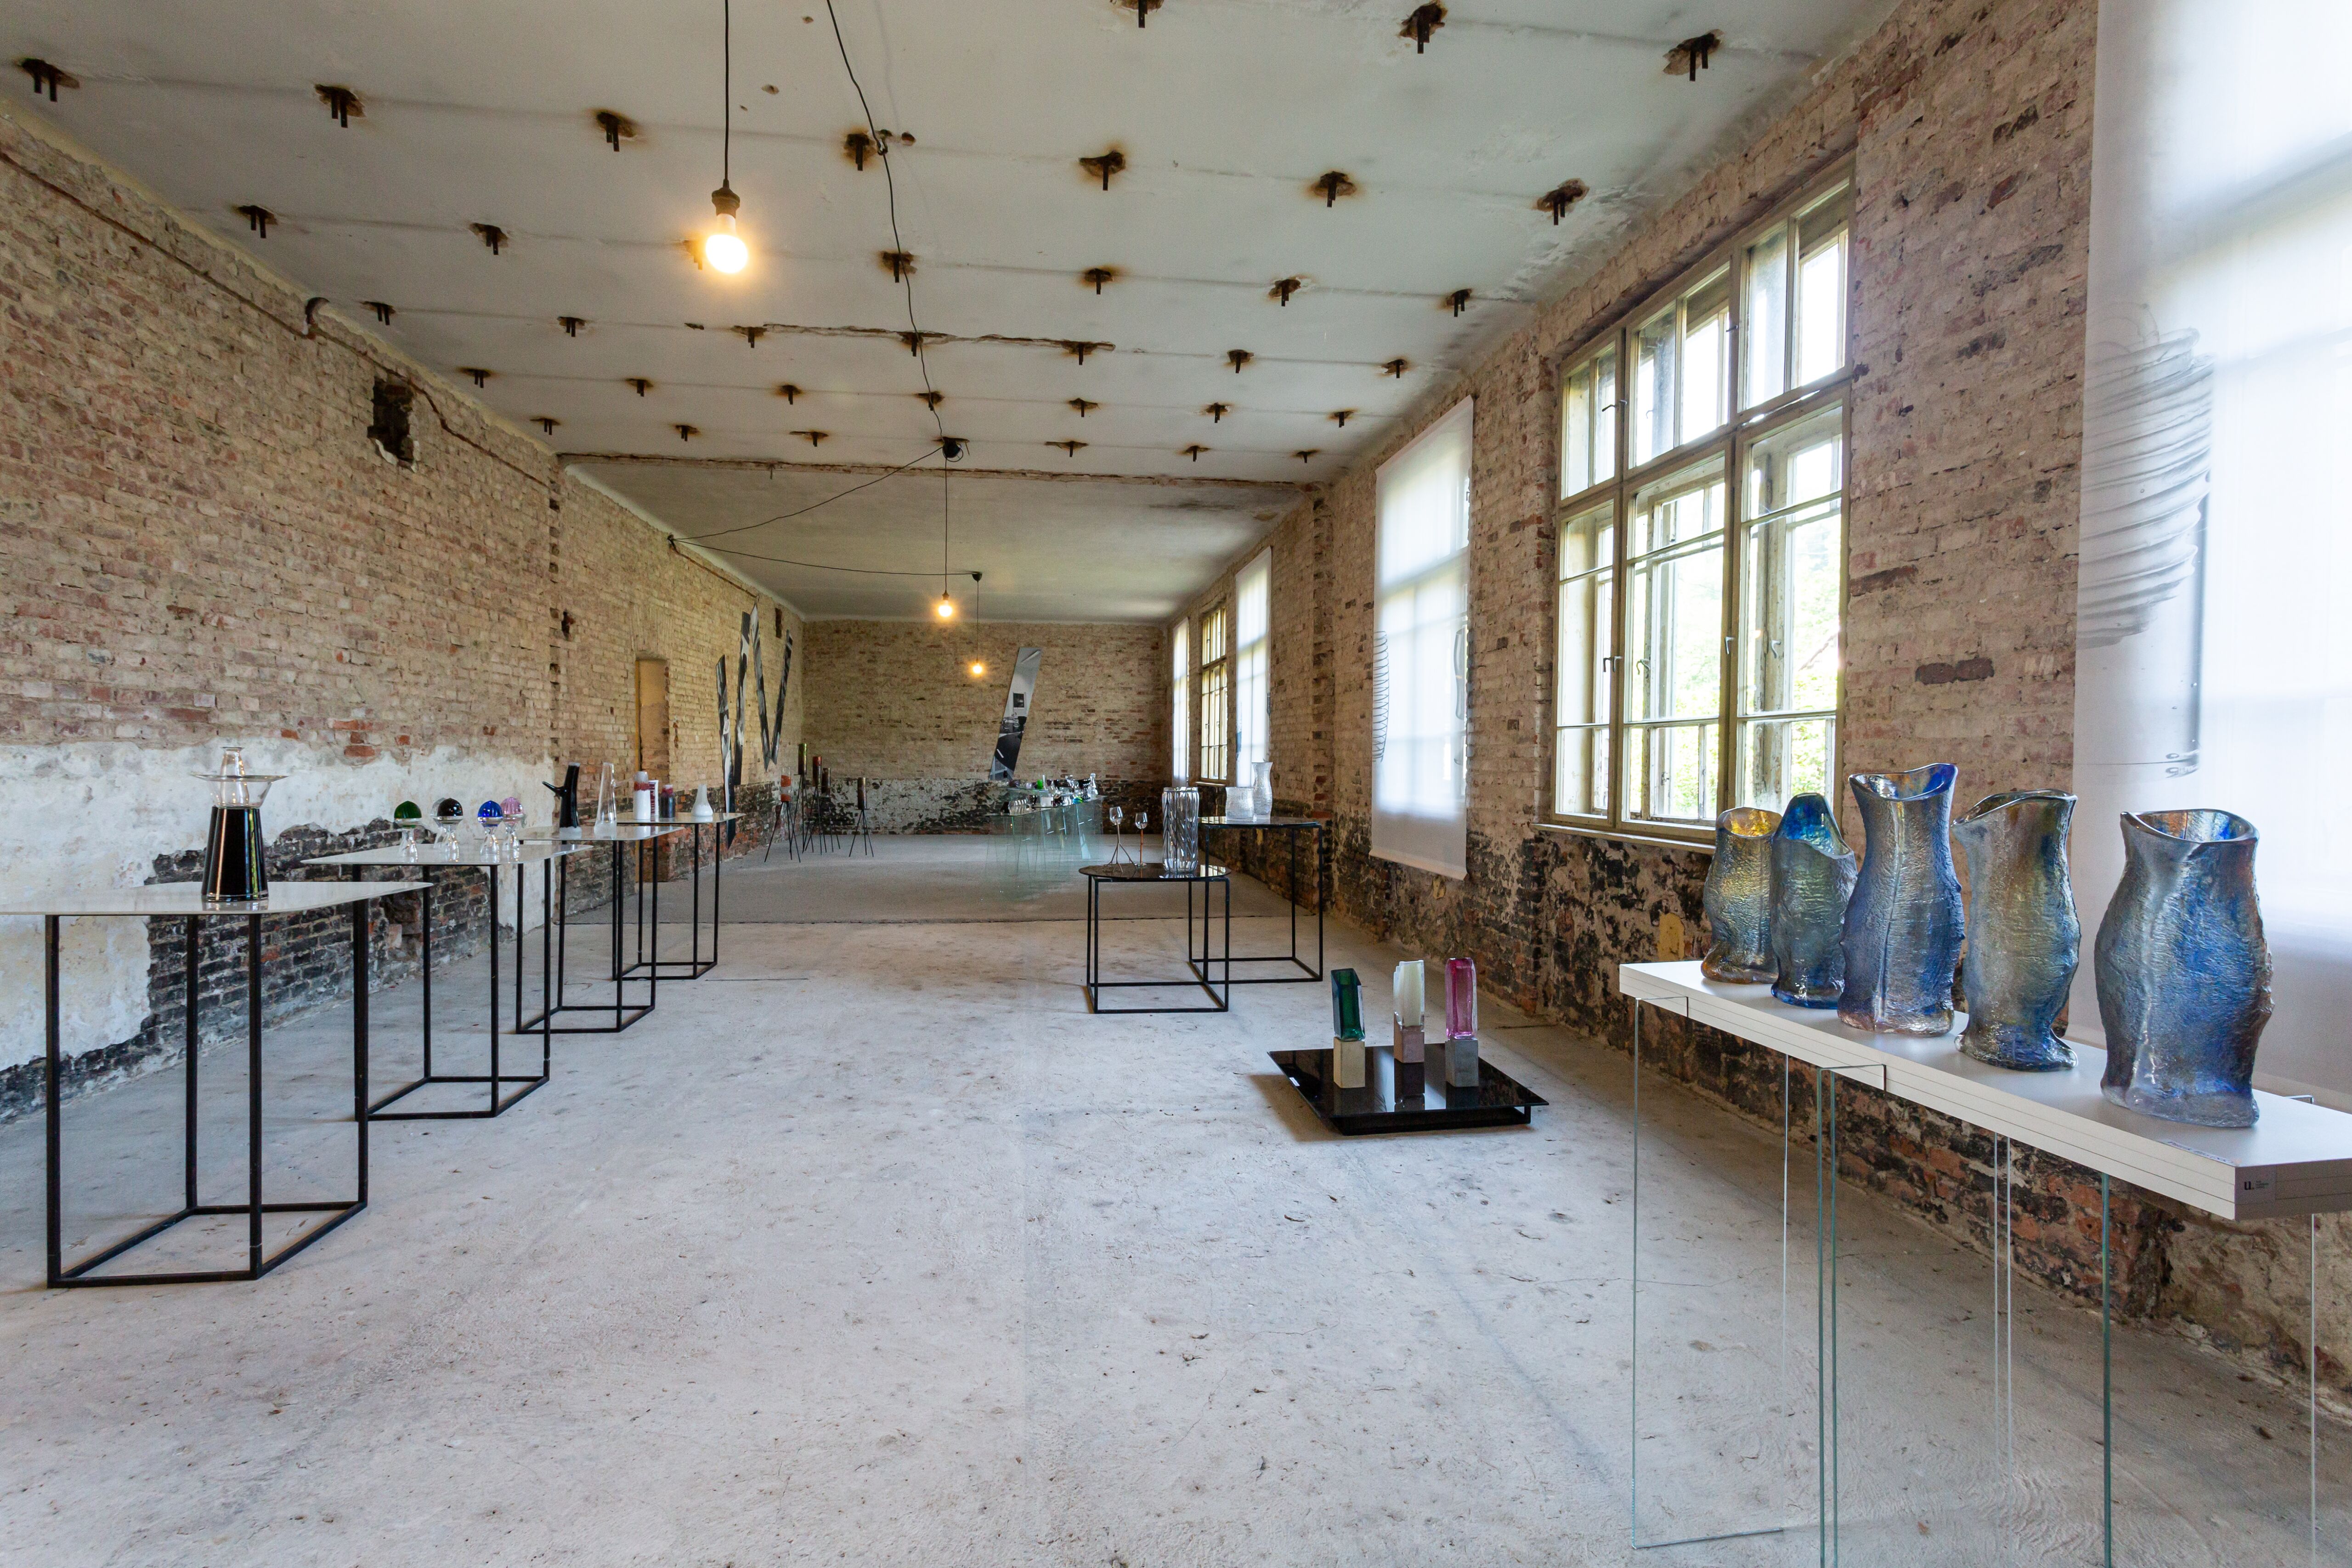 Celkový pohľad na miestnosť industriálneho interiéru, v ktorom je nainštalovaná výstava skla. 